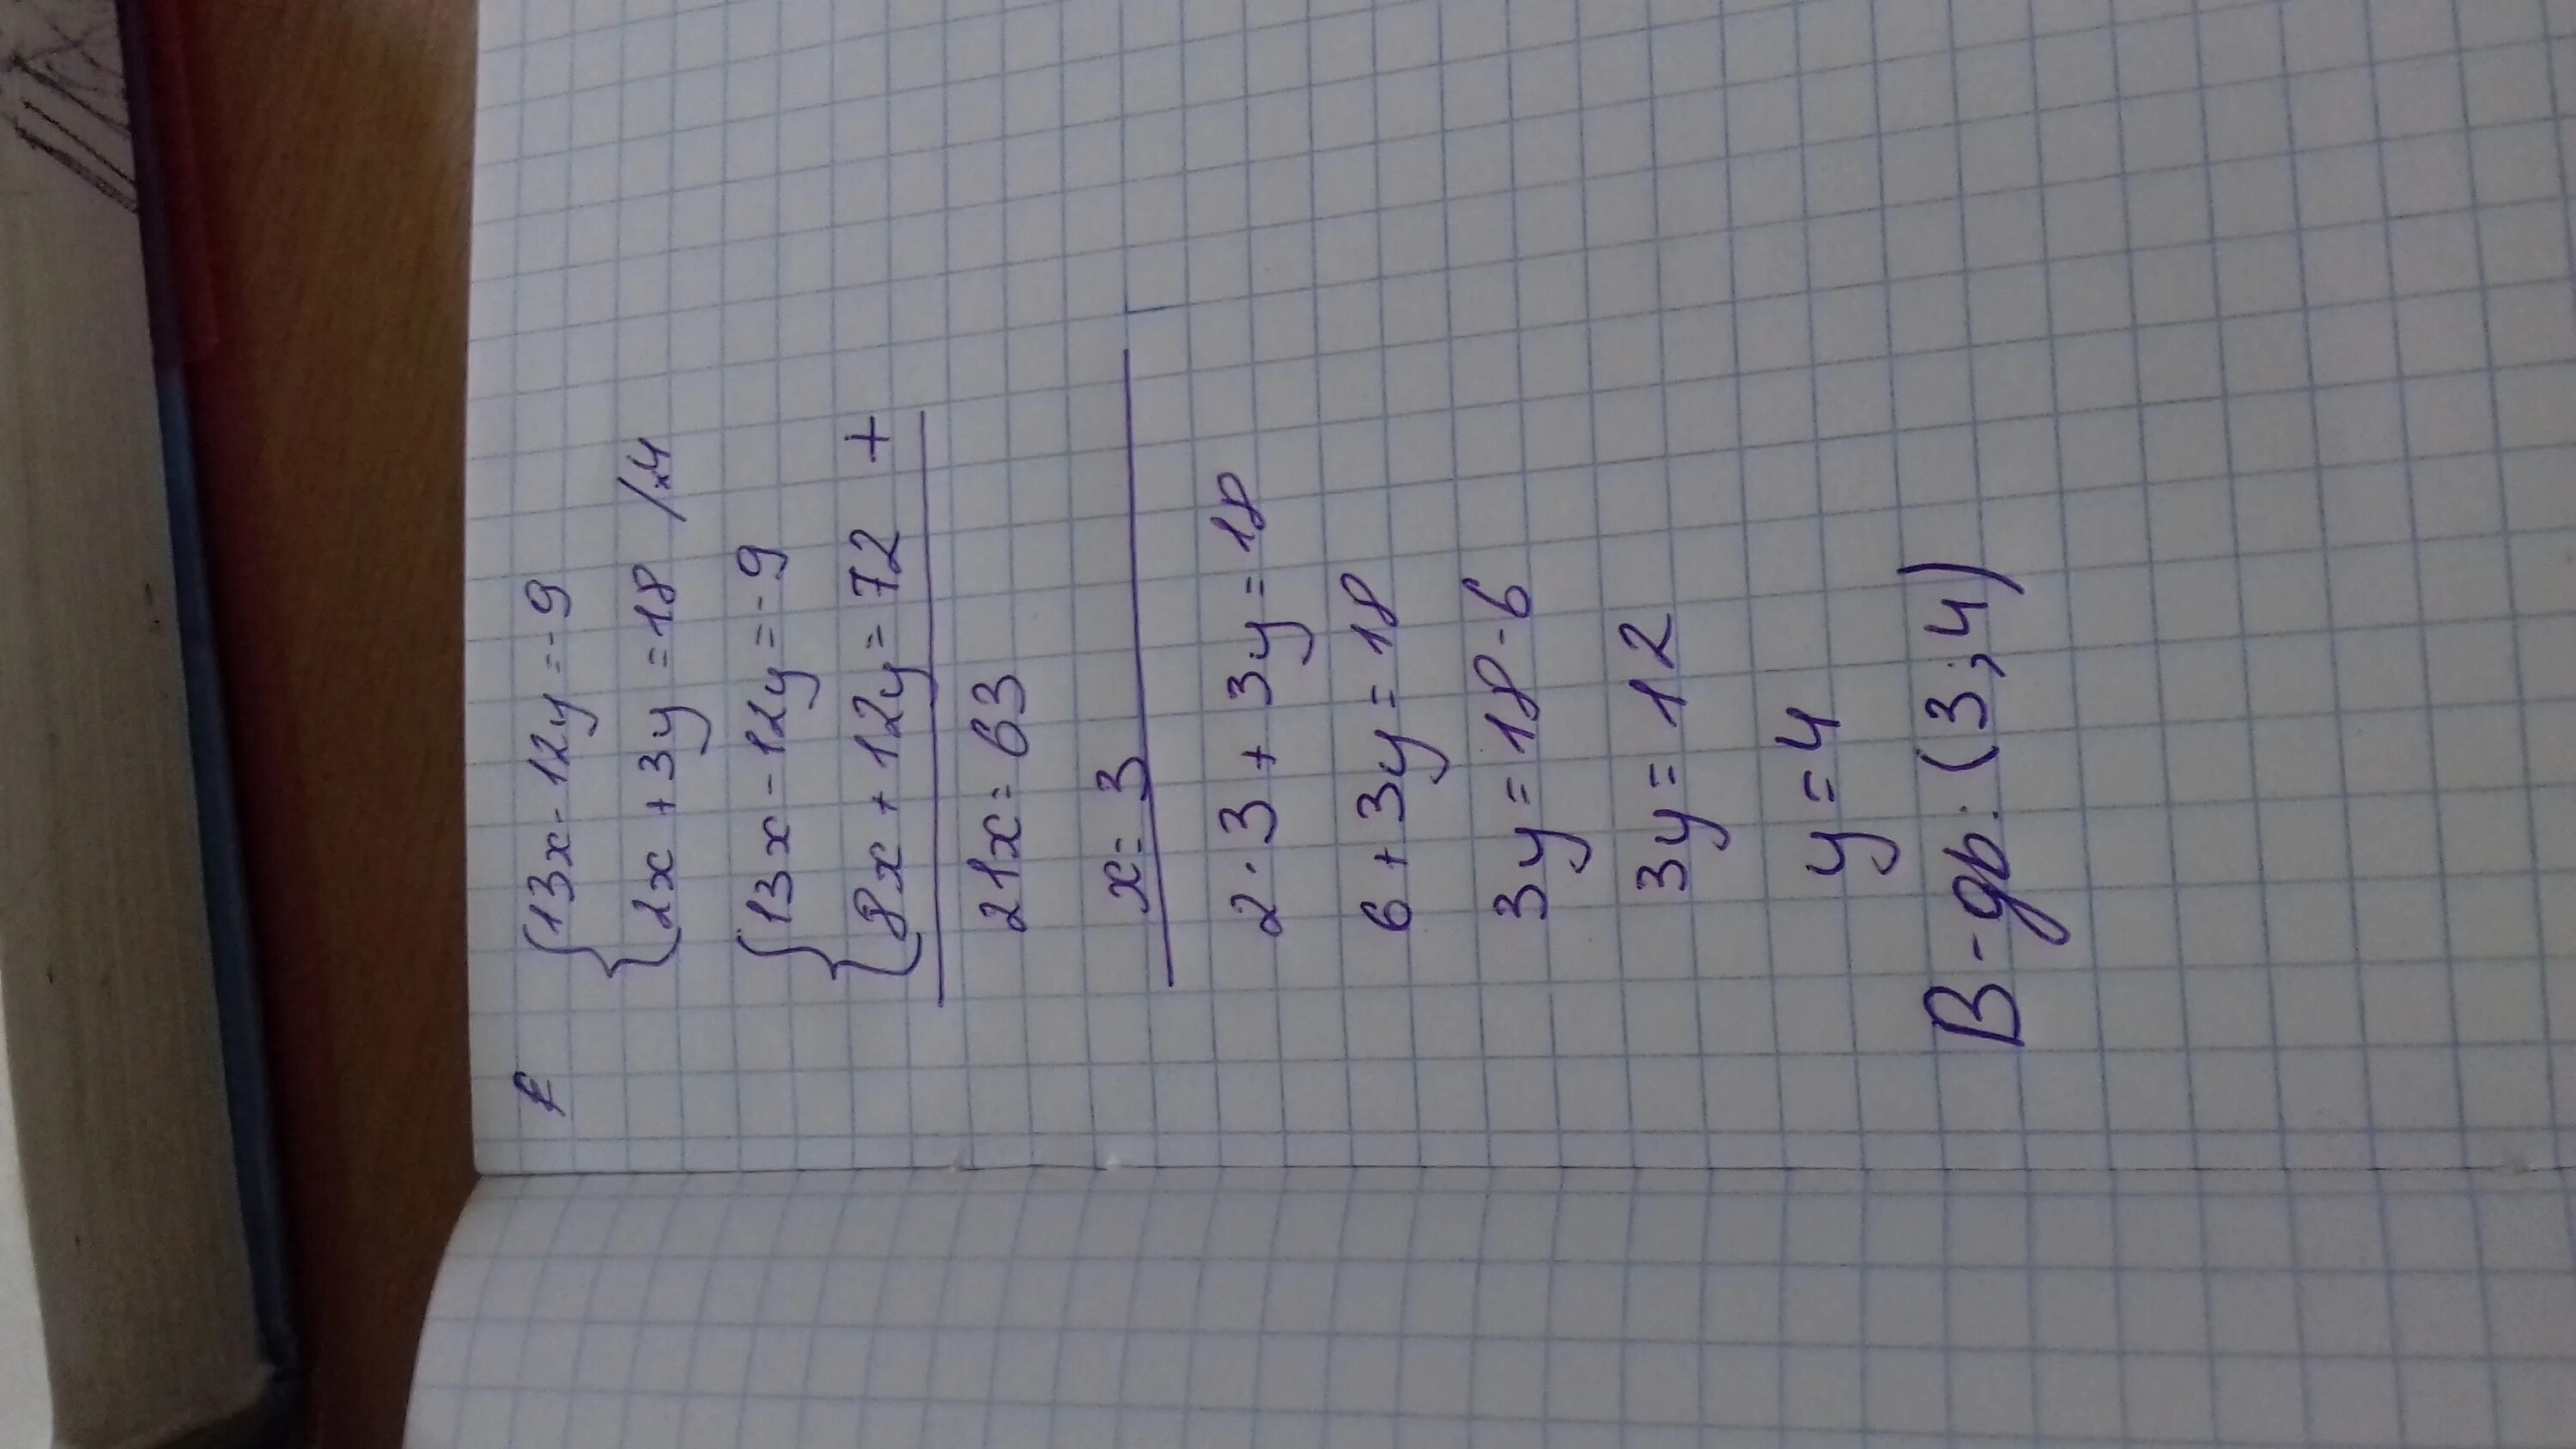 9/3*2. 4х-у=13 5х+3у=12. 3х-9у=12. 9 3 12 Х Х-?. 8 5 8 3х 13 решить